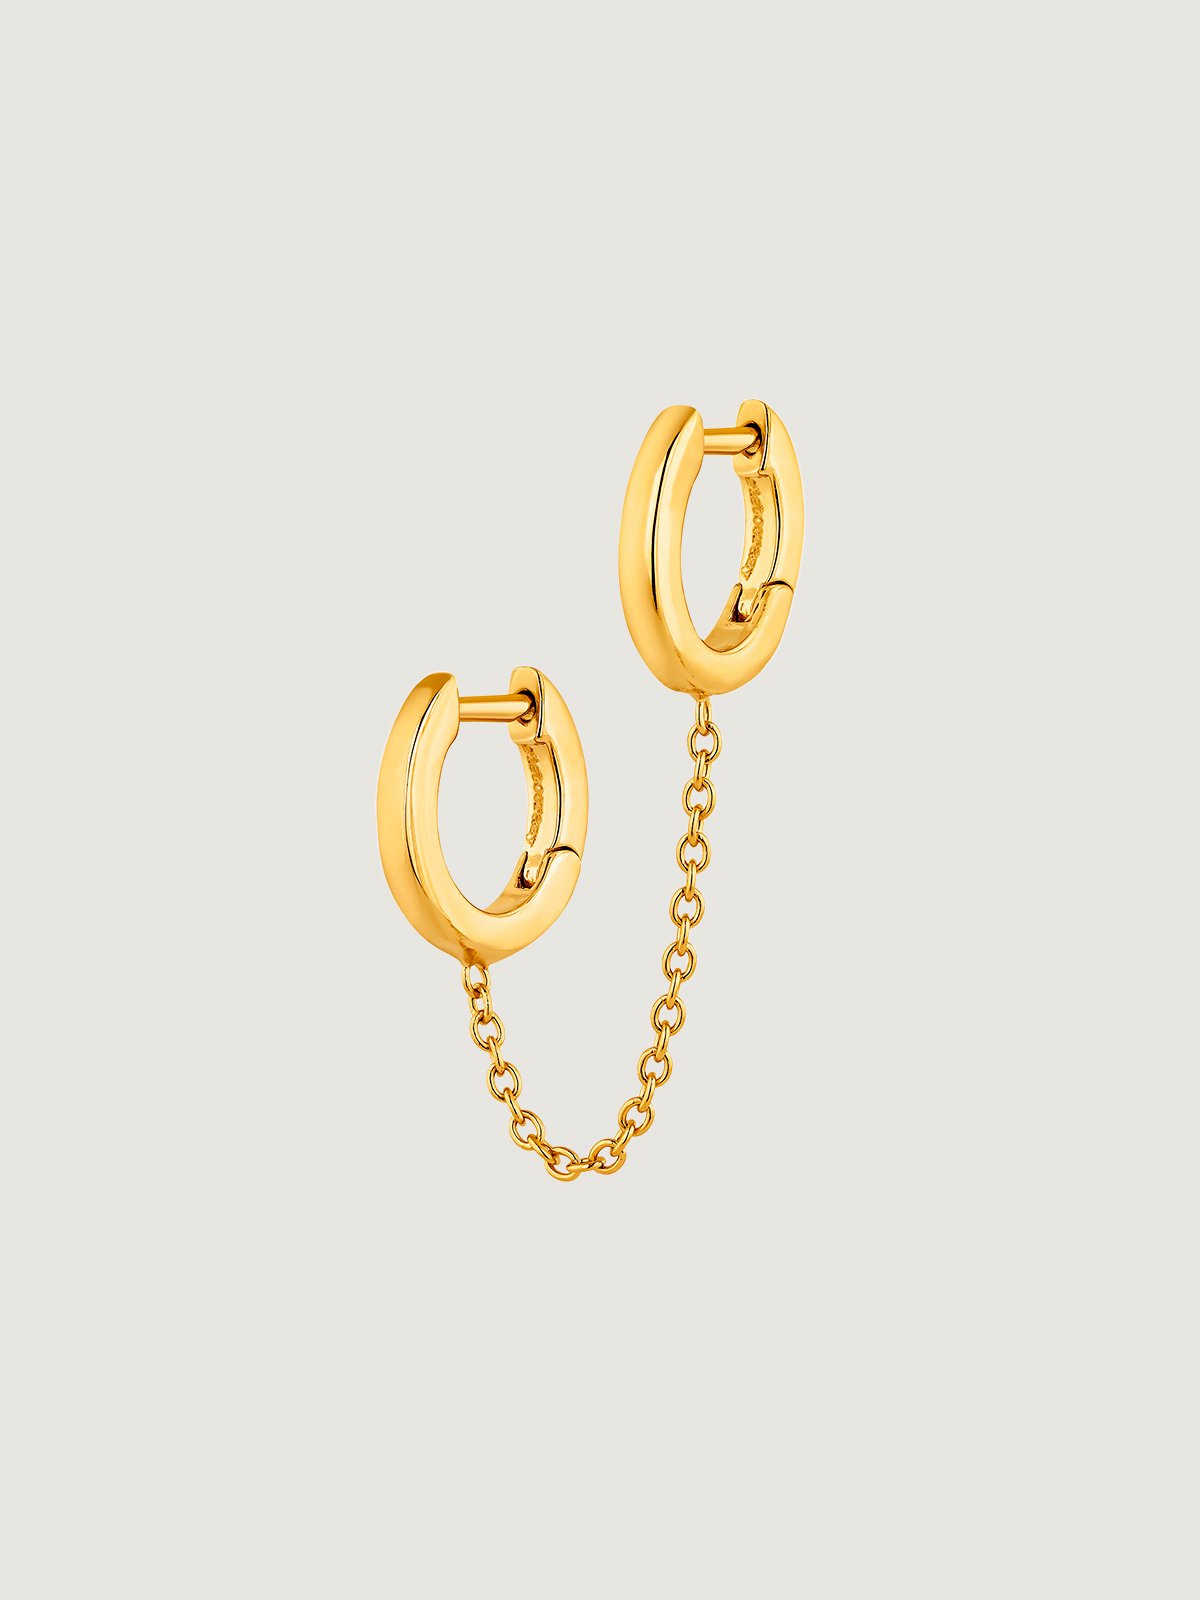 Boucle d'oreille grimpante individuelle en argent 925 plaqué or jaune 18K avec double anneau